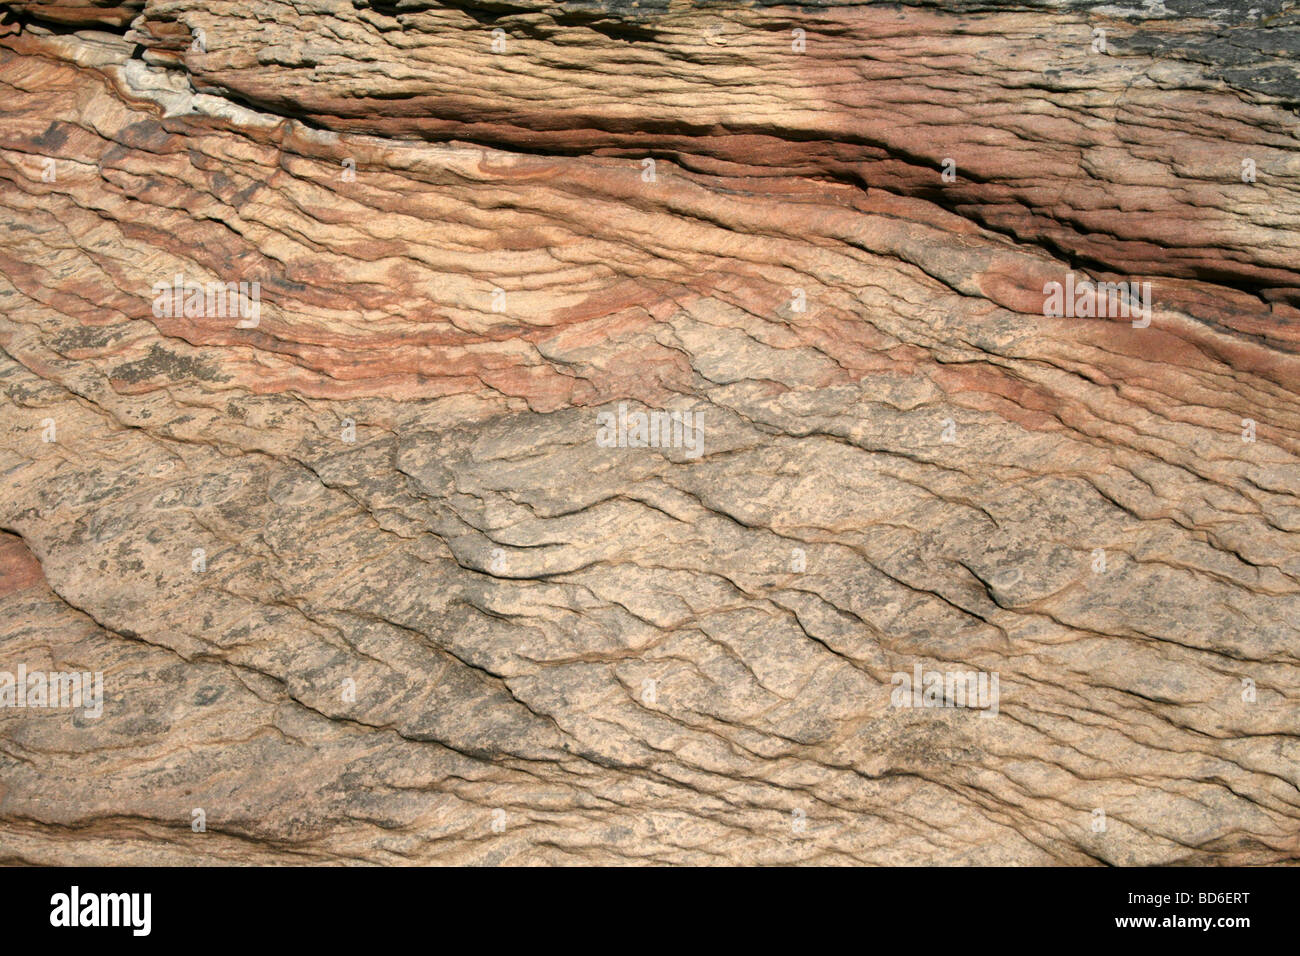 Strati di roccia in arenaria Bunter, Hilbre Island, Wirral, Merseyside, Regno Unito Foto Stock